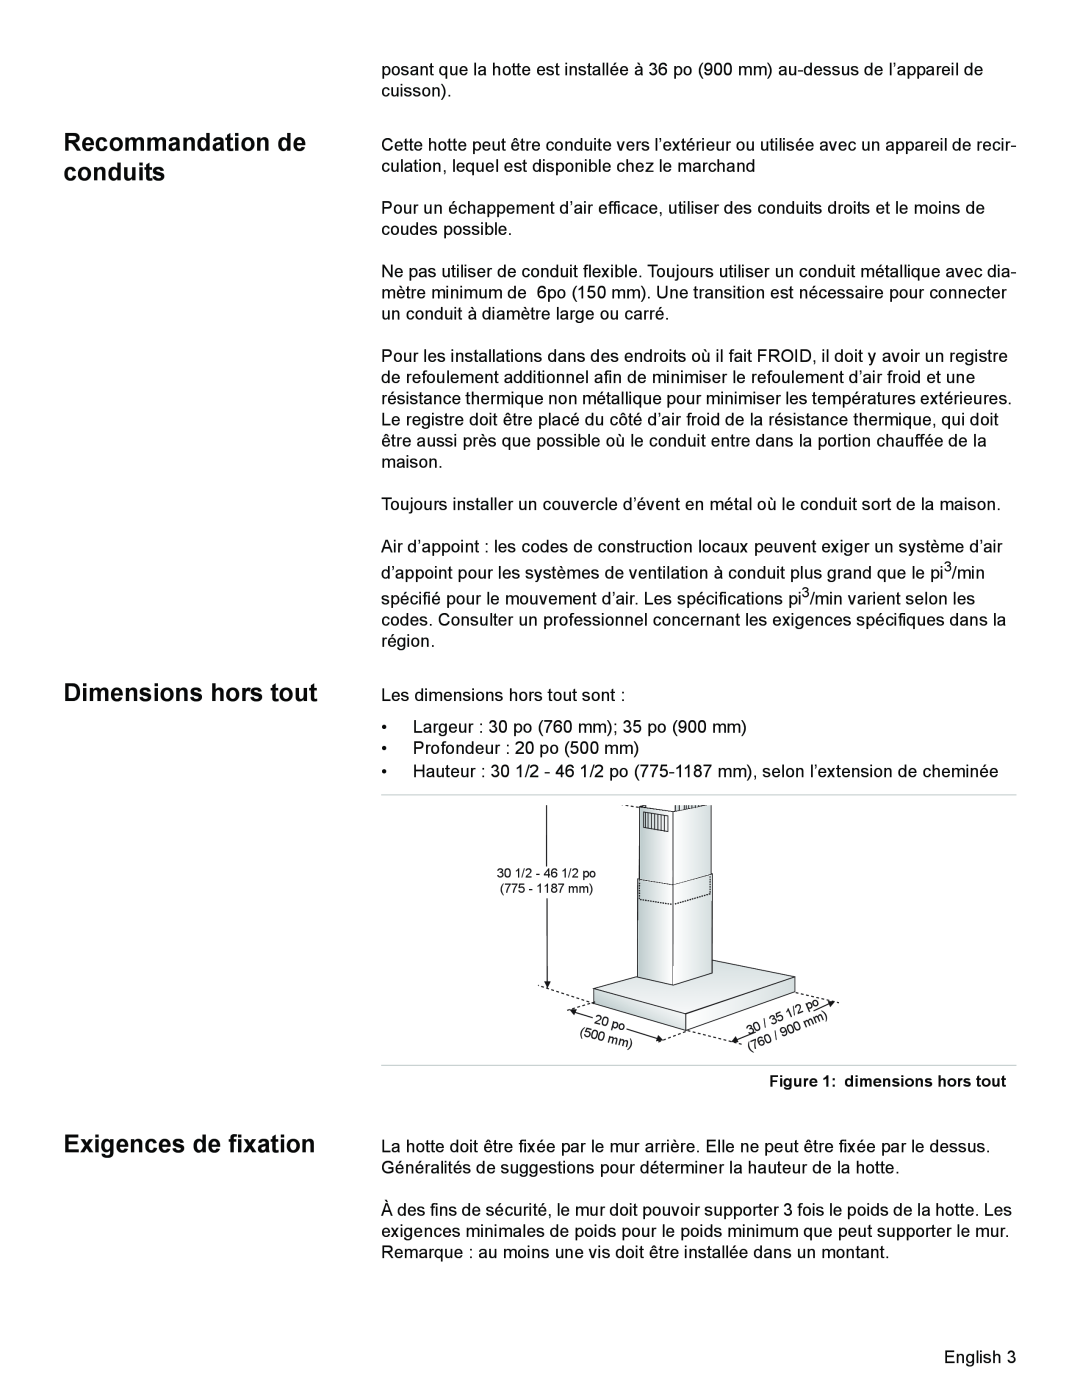 Bosch Appliances DKE94 Recommandation de conduits Dimensions hors tout, Exigences de fixation, dimensions hors tout 